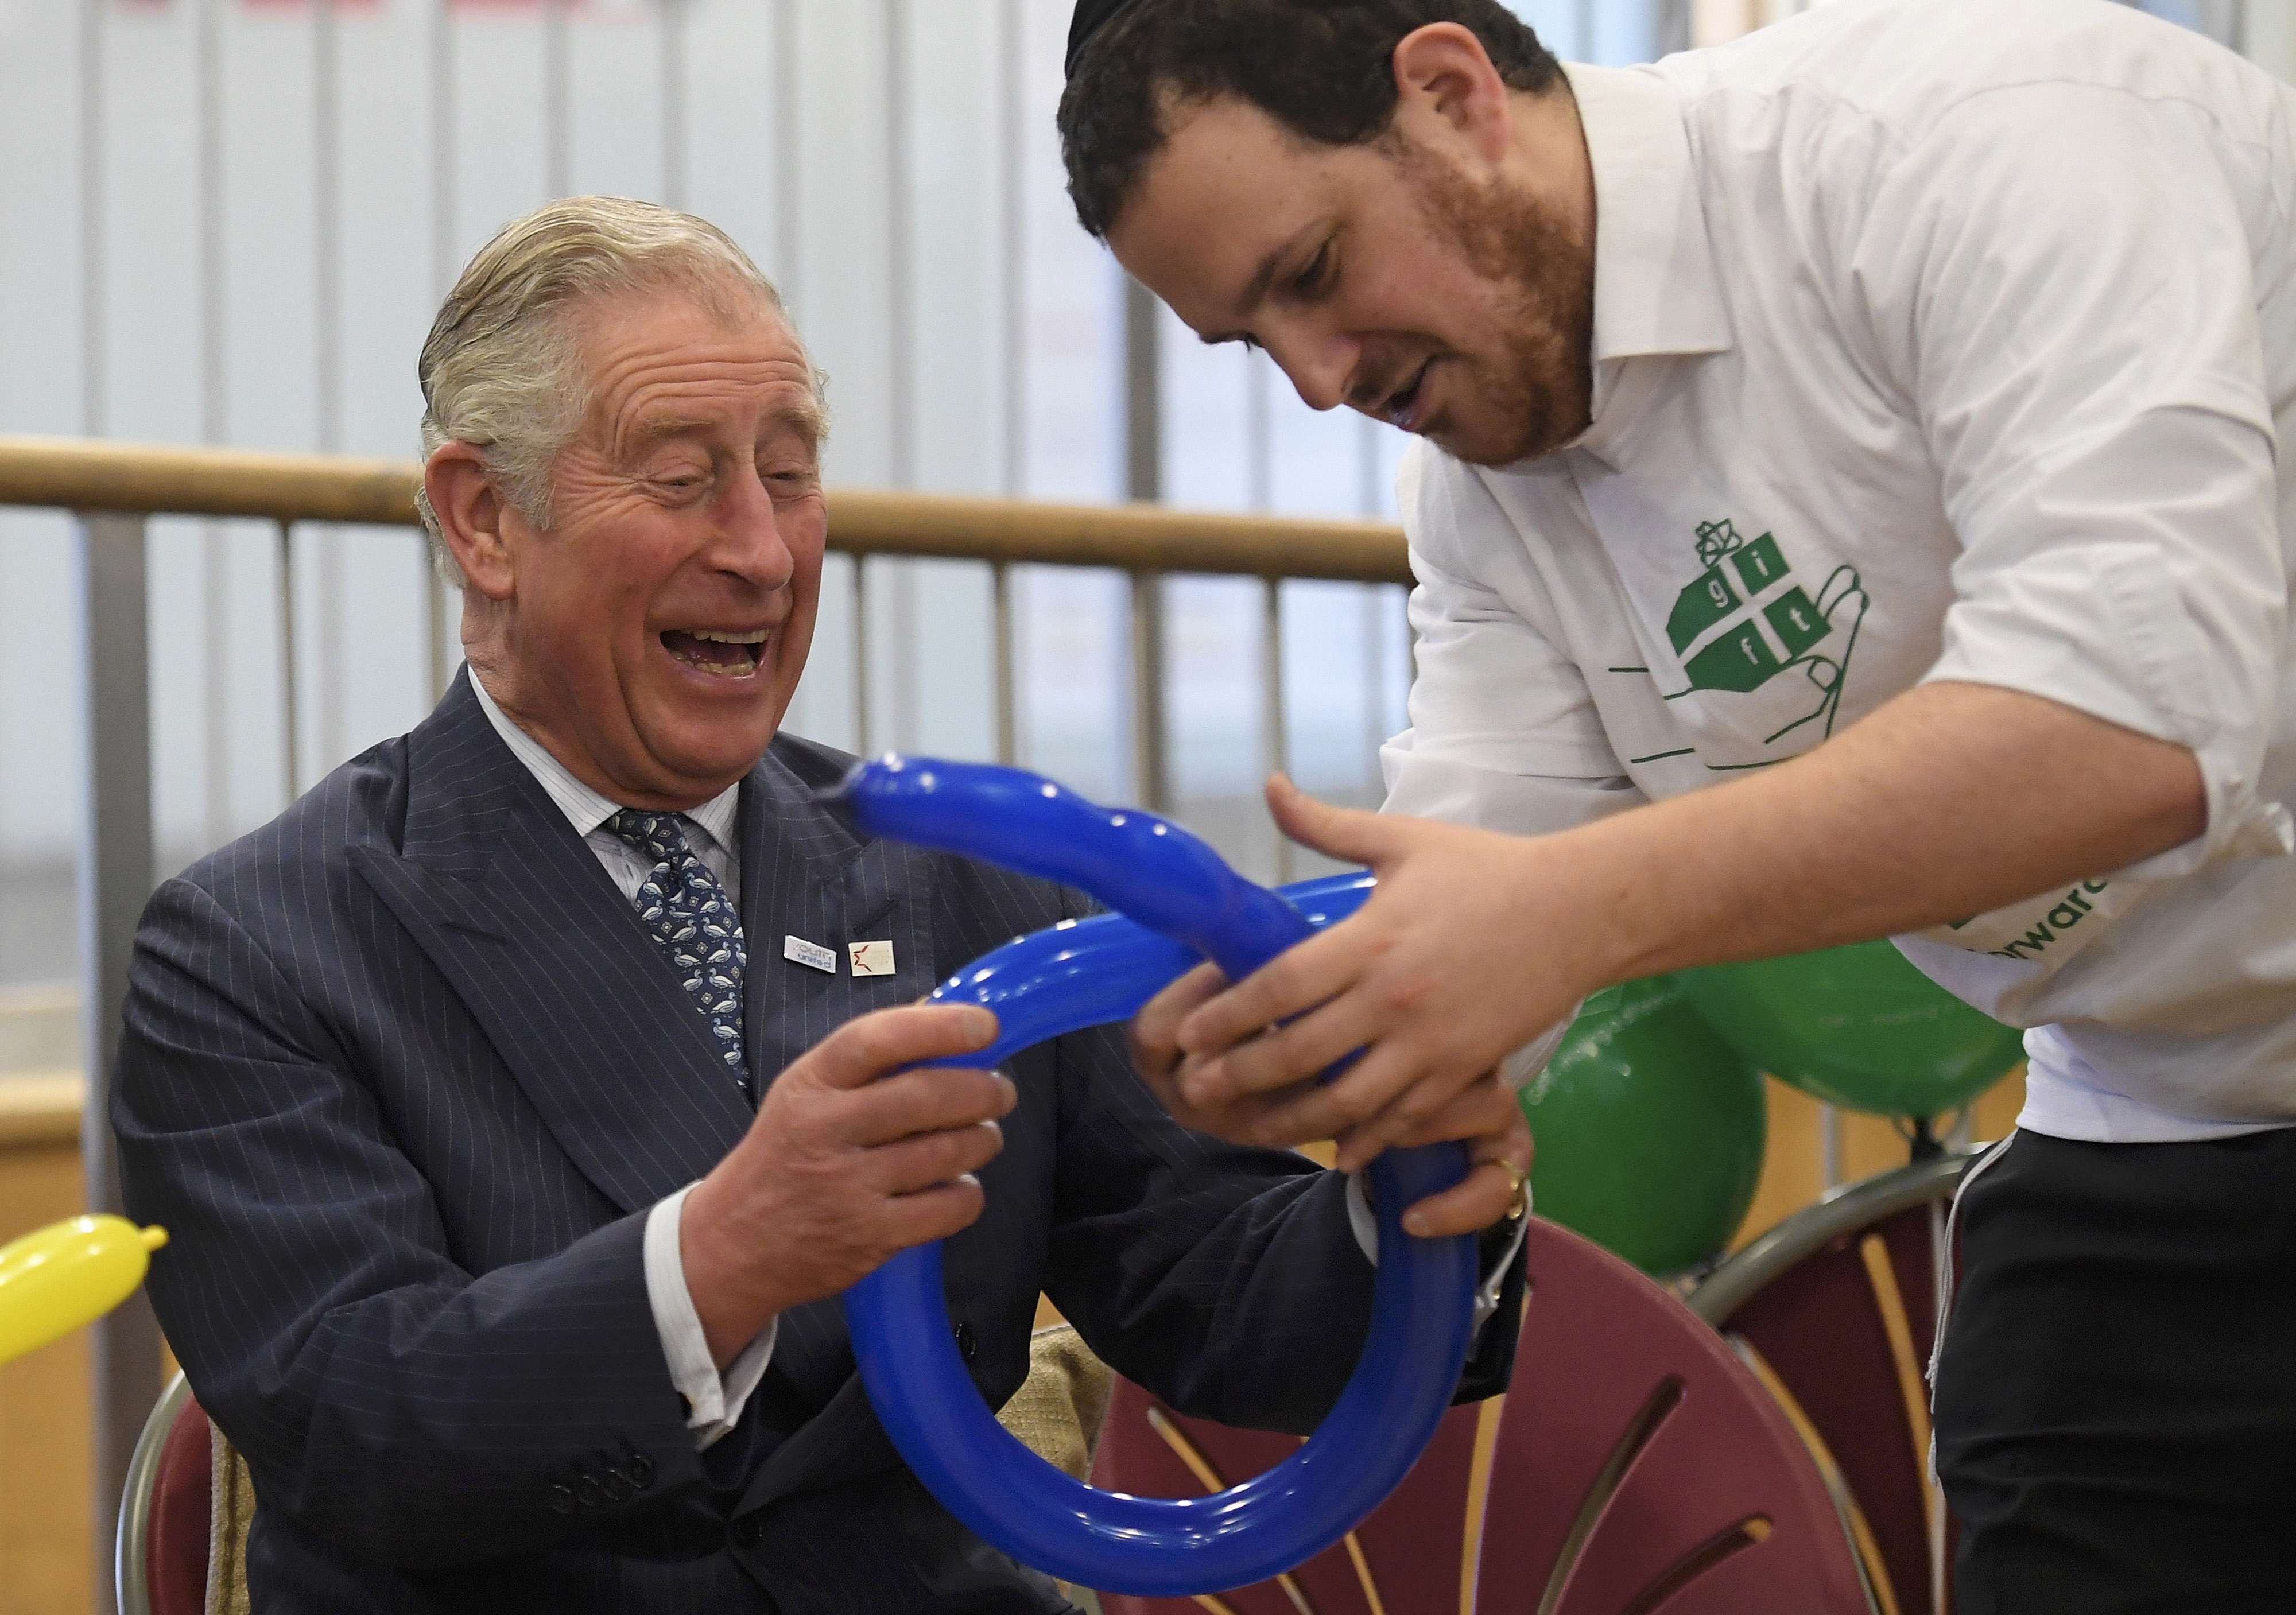 الأمير تشارلز يضحك خلال حضوره درس صناعة أغطية الرأس بالبالونات فى كلية يفنيه شمال لندن